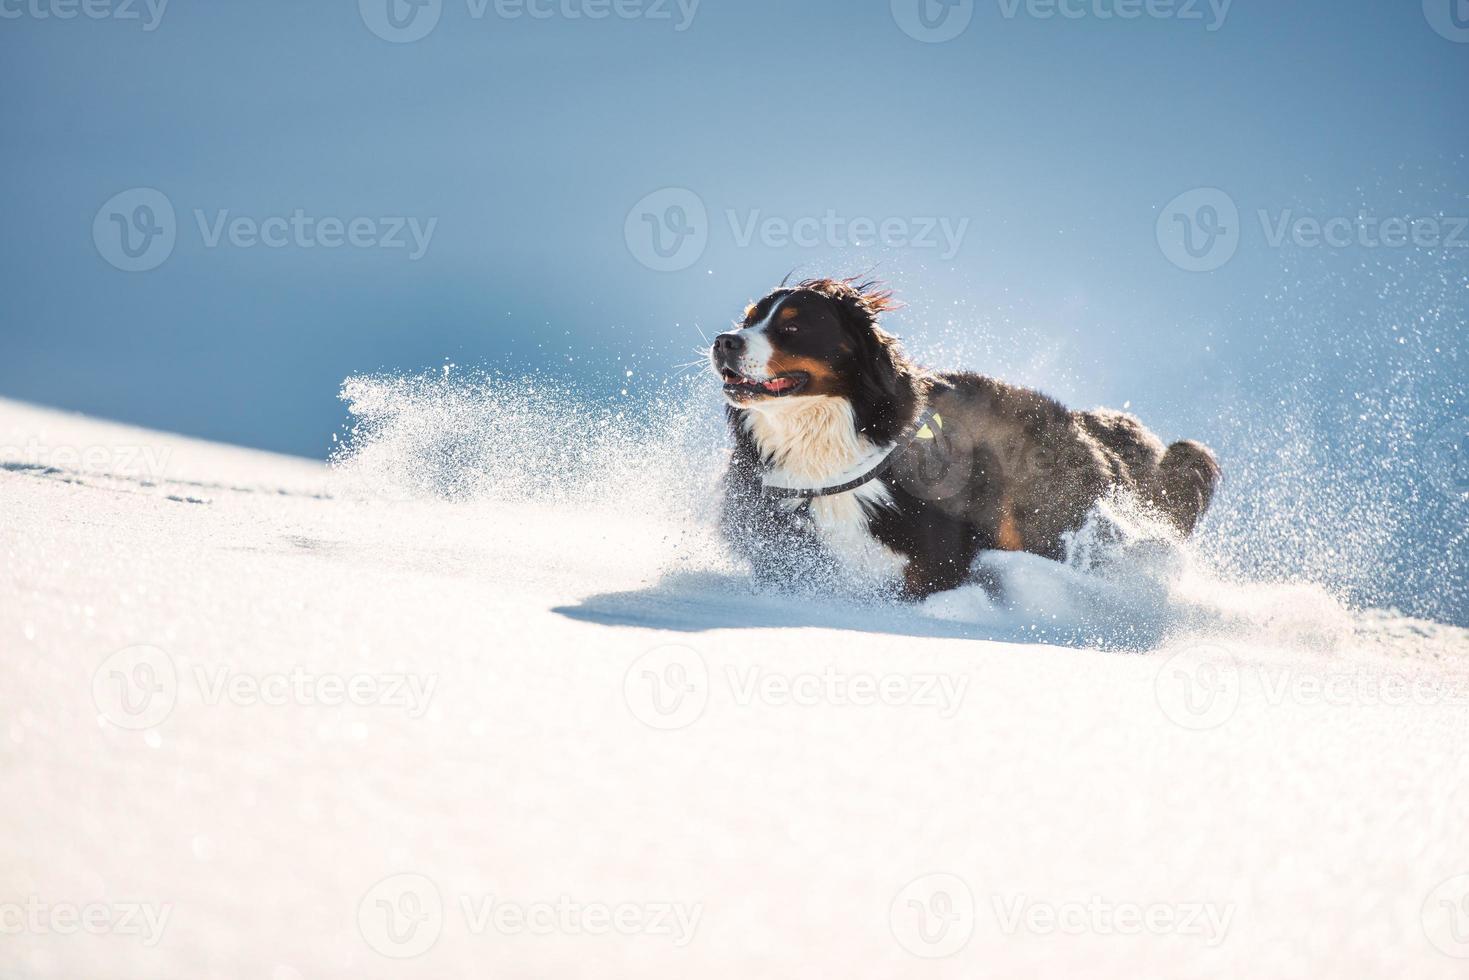 grande bovaro del bernese peloso corre nella neve fresca foto